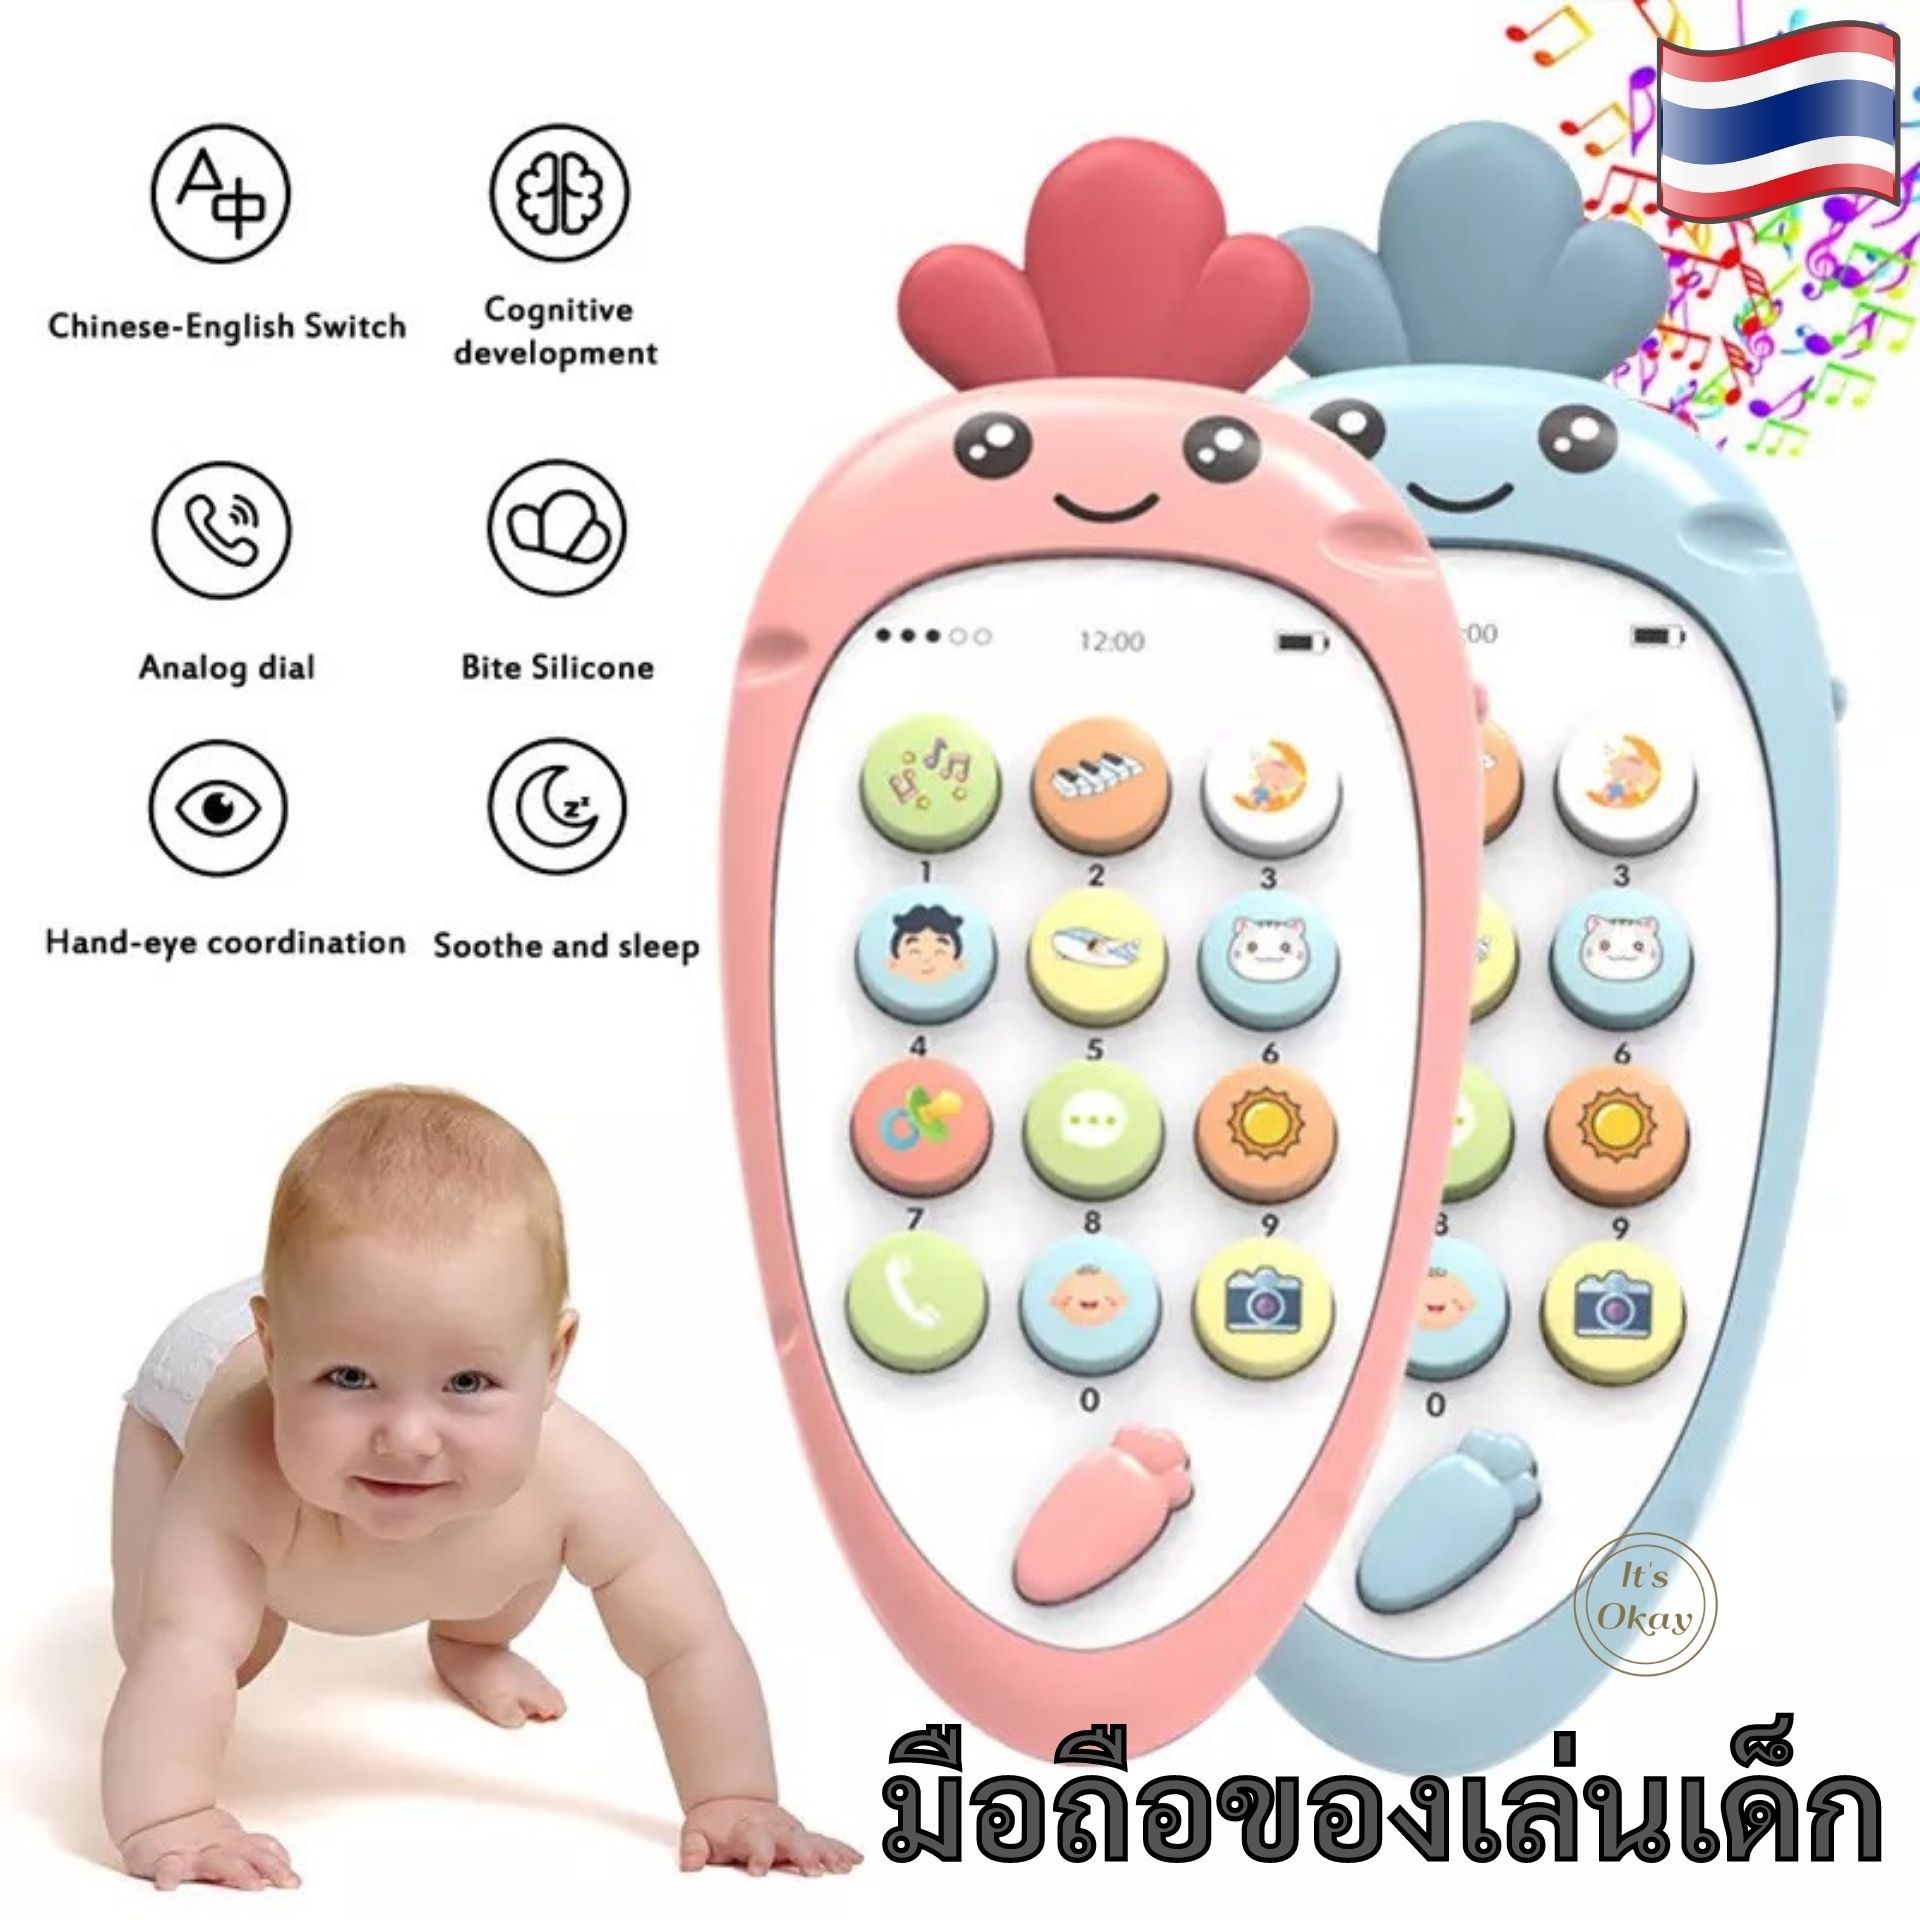 ?มือถือของเล่นเด็ก โทรศัพท์มือถือของเล่นเด็ก (ไม่แถมถ่าน) มีโหมดเรียนรู้ 2 ภาษา จีน-อังกฤษ โทรศัพท์เด็ก ของเล่นเด็ก Baby toy OK123